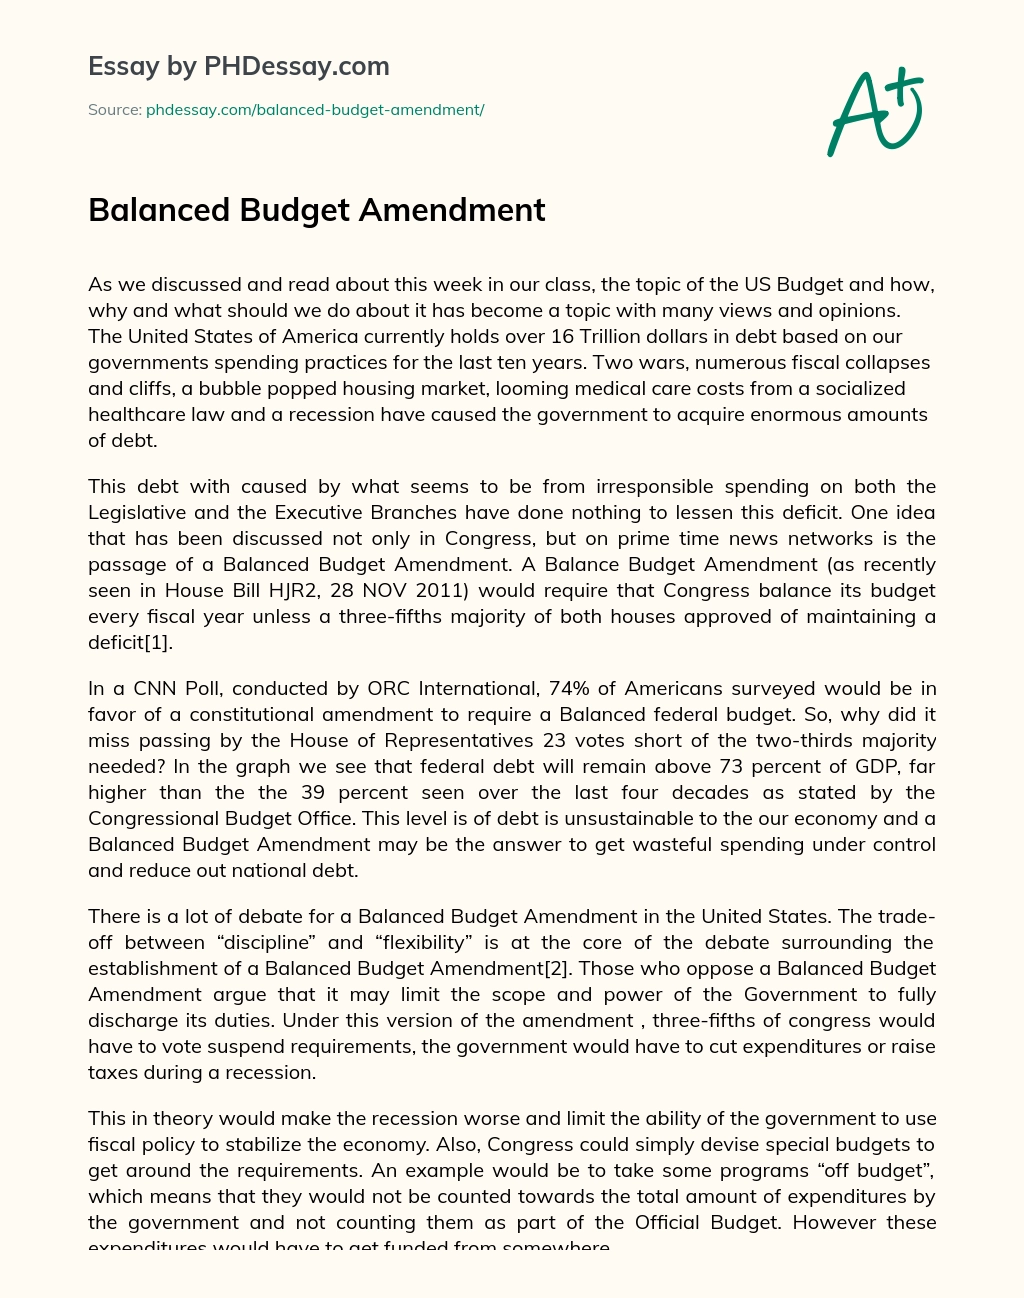 Balanced Budget Amendment essay